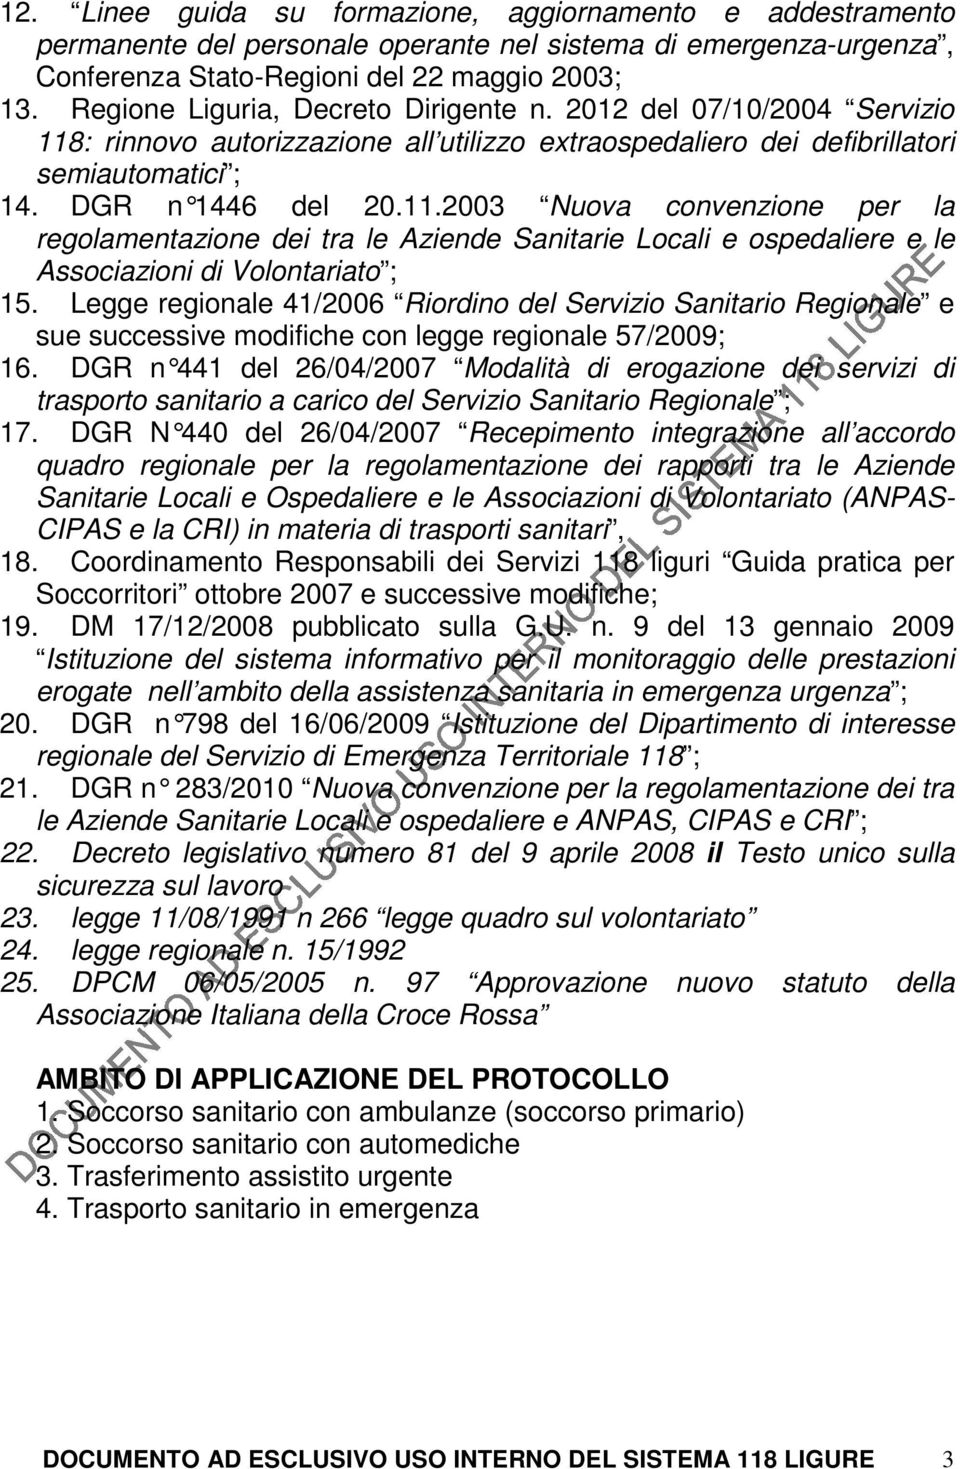 : rinnovo autorizzazione all utilizzo extraospedaliero dei defibrillatori semiautomatici ; 14. DGR n 1446 del 20.11.